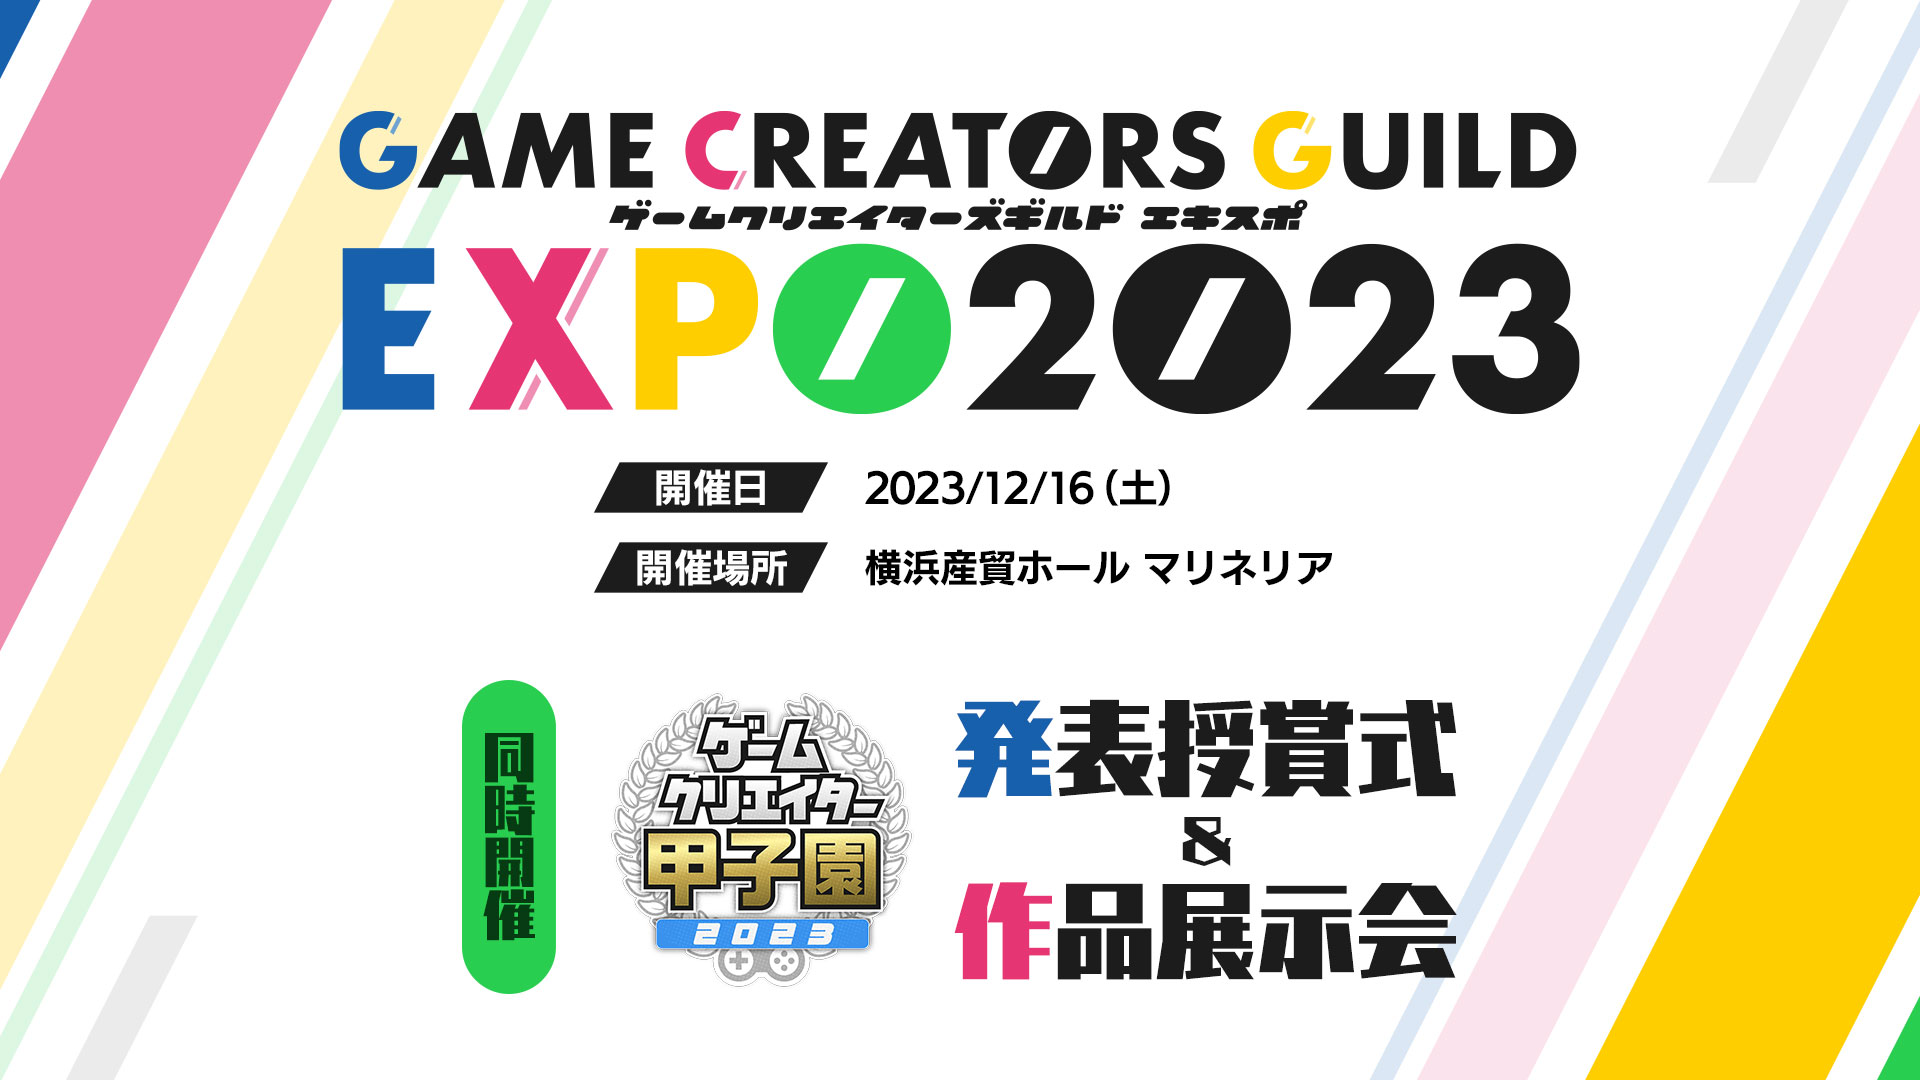 ゲームクリエイターズギルドEXPO 2023